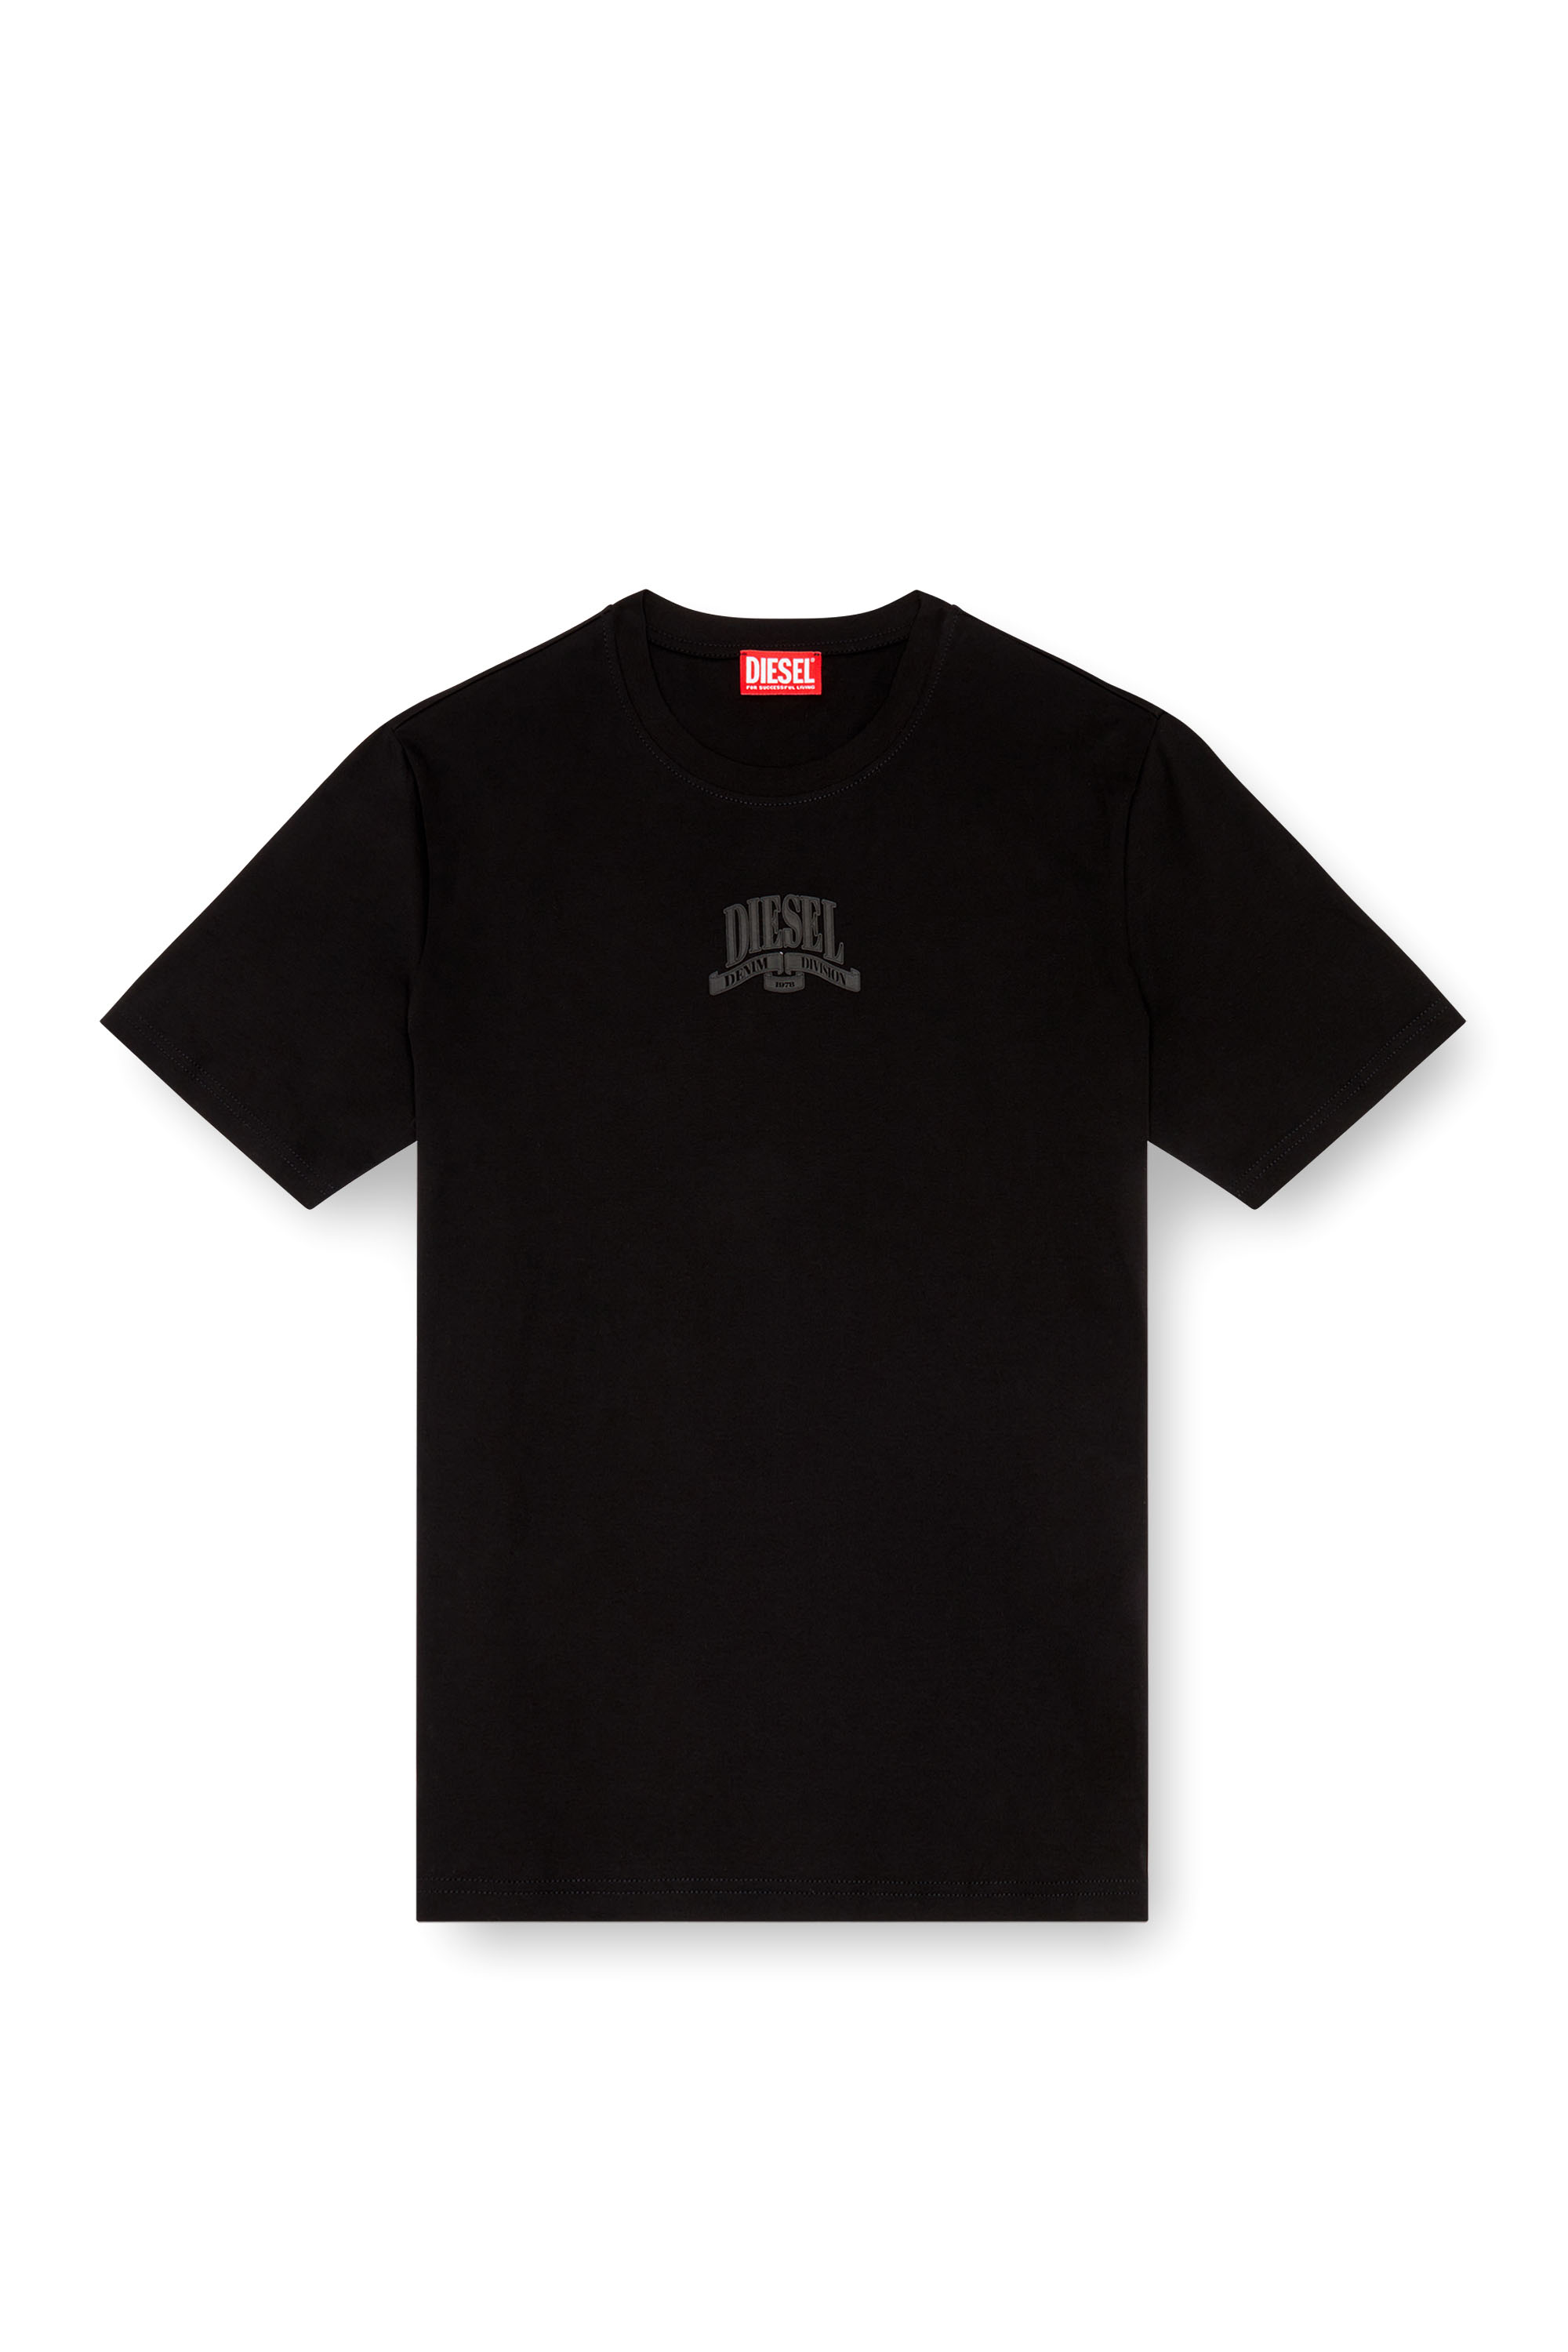 Diesel - T-MADJUST-K1, Man Interlock T-shirt with tonal Diesel print in Black - Image 4